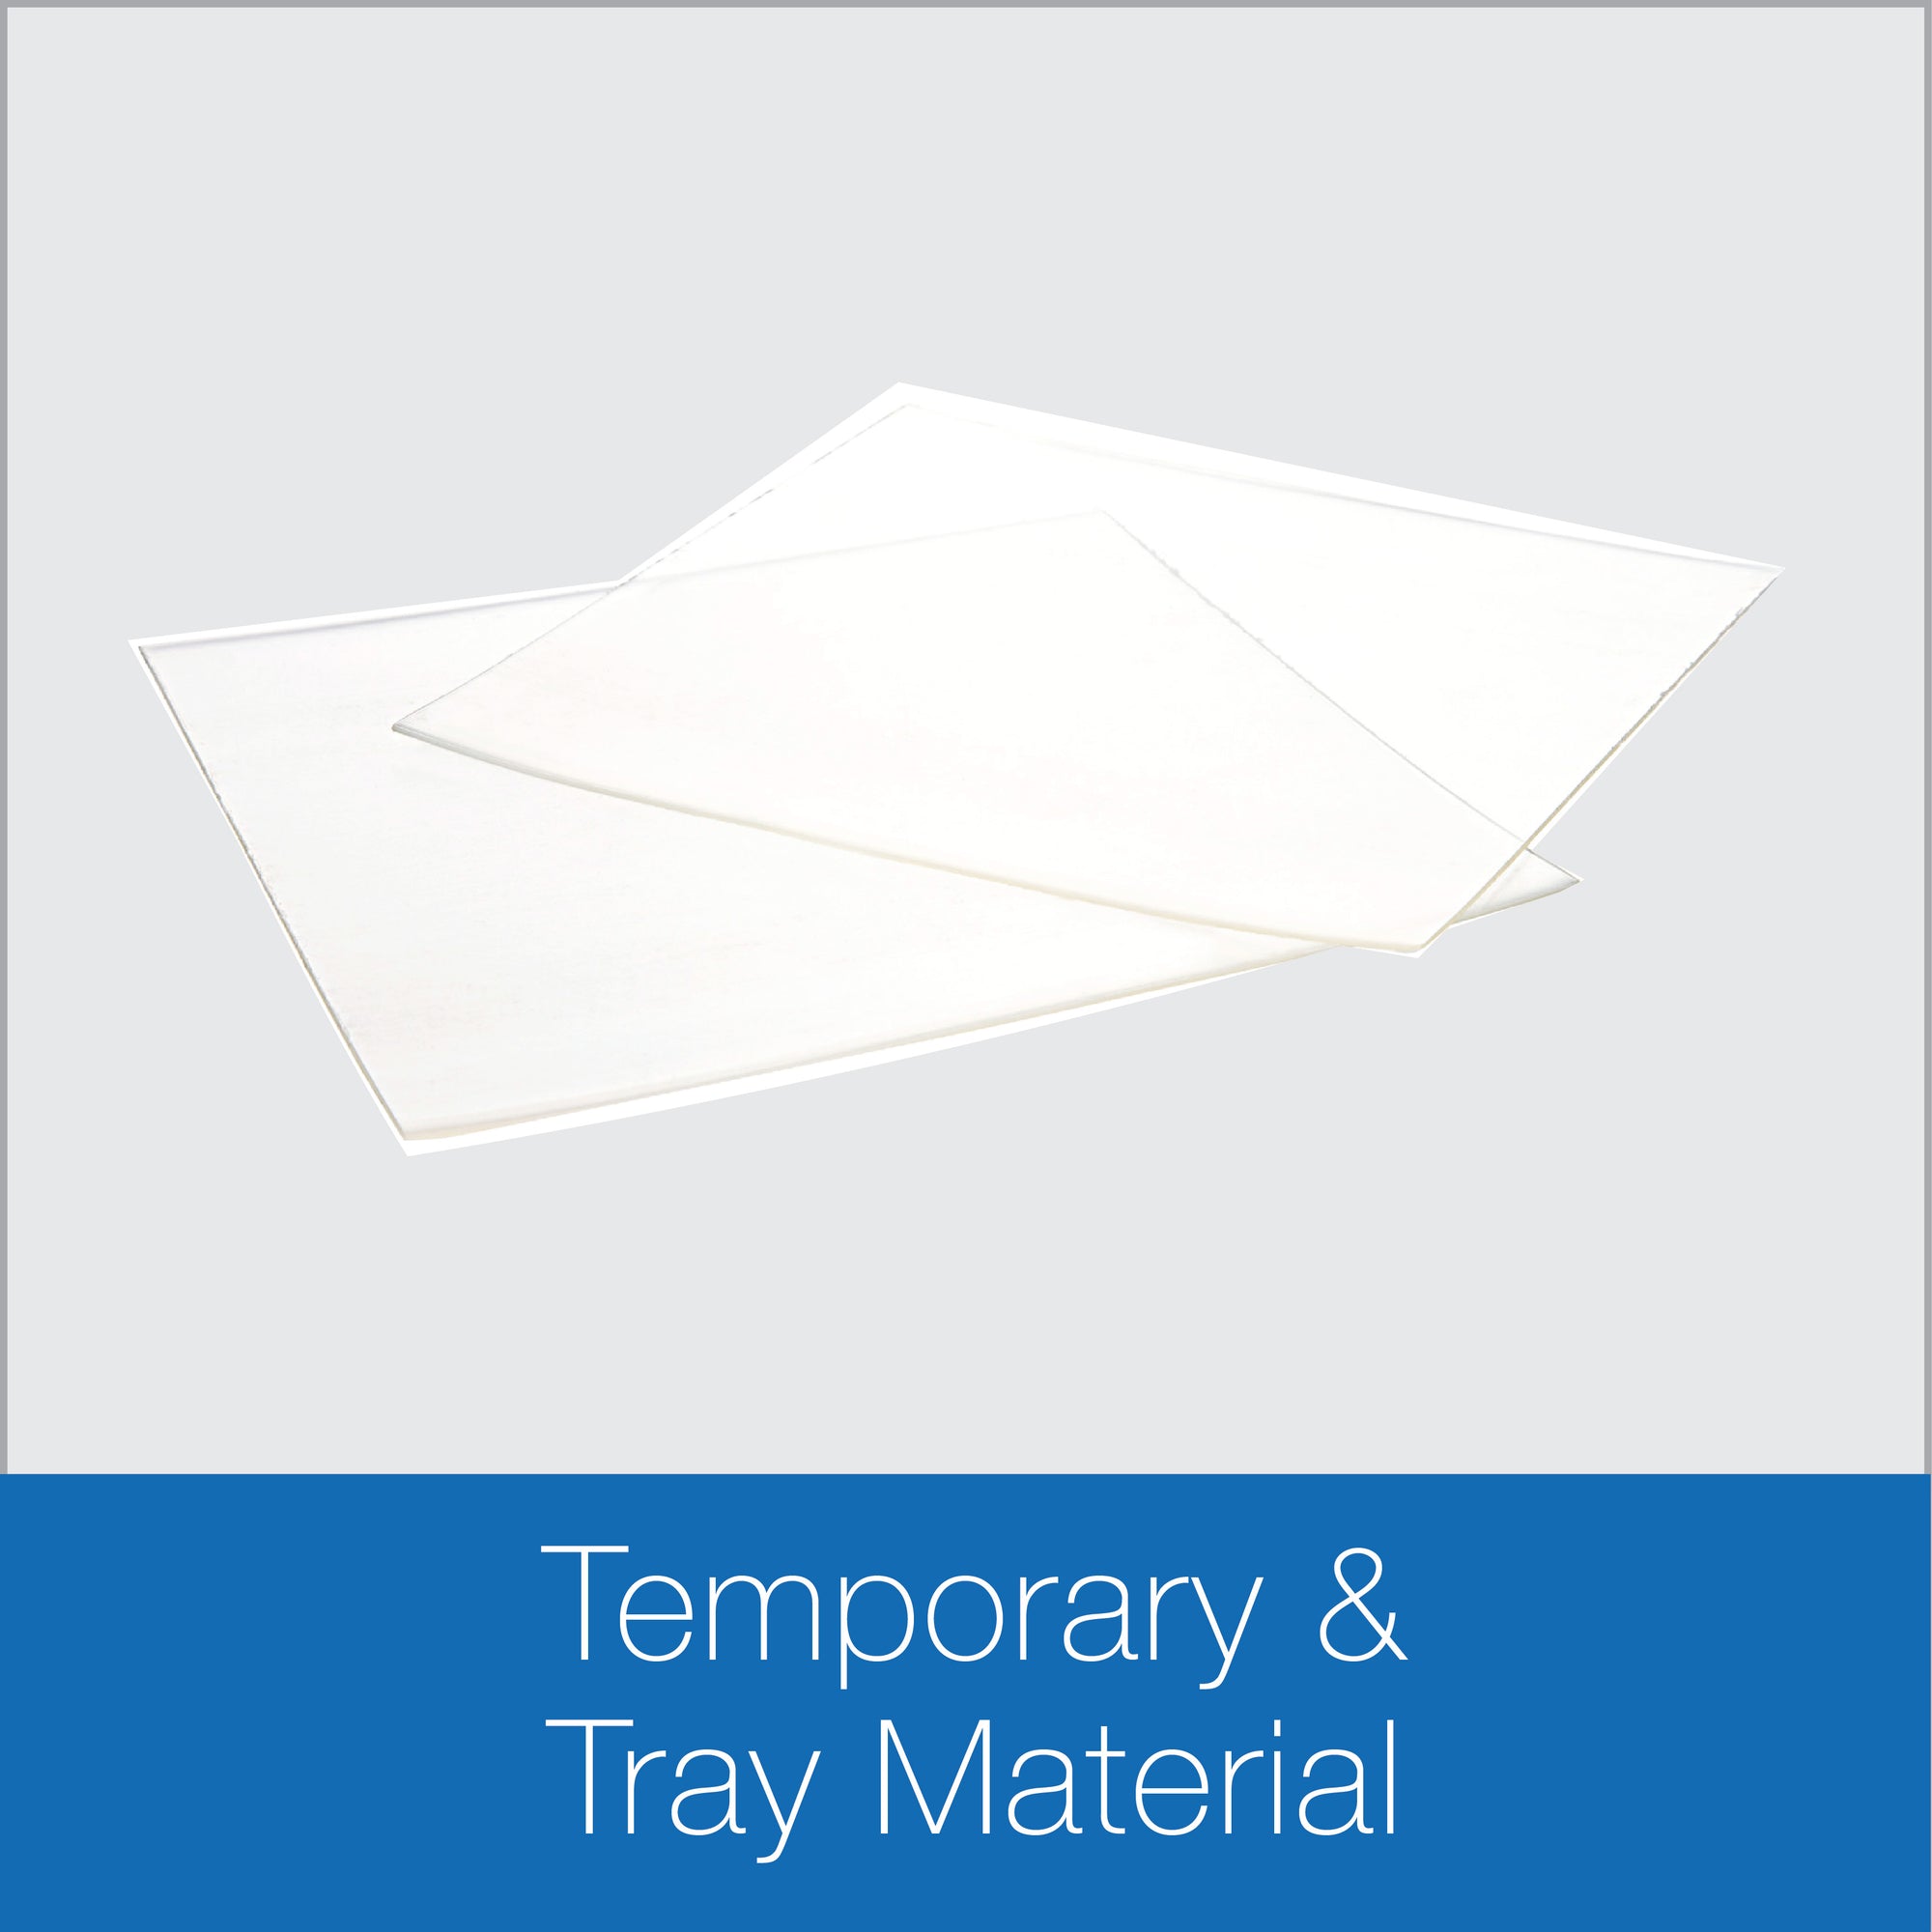 Temporary & Tray Material